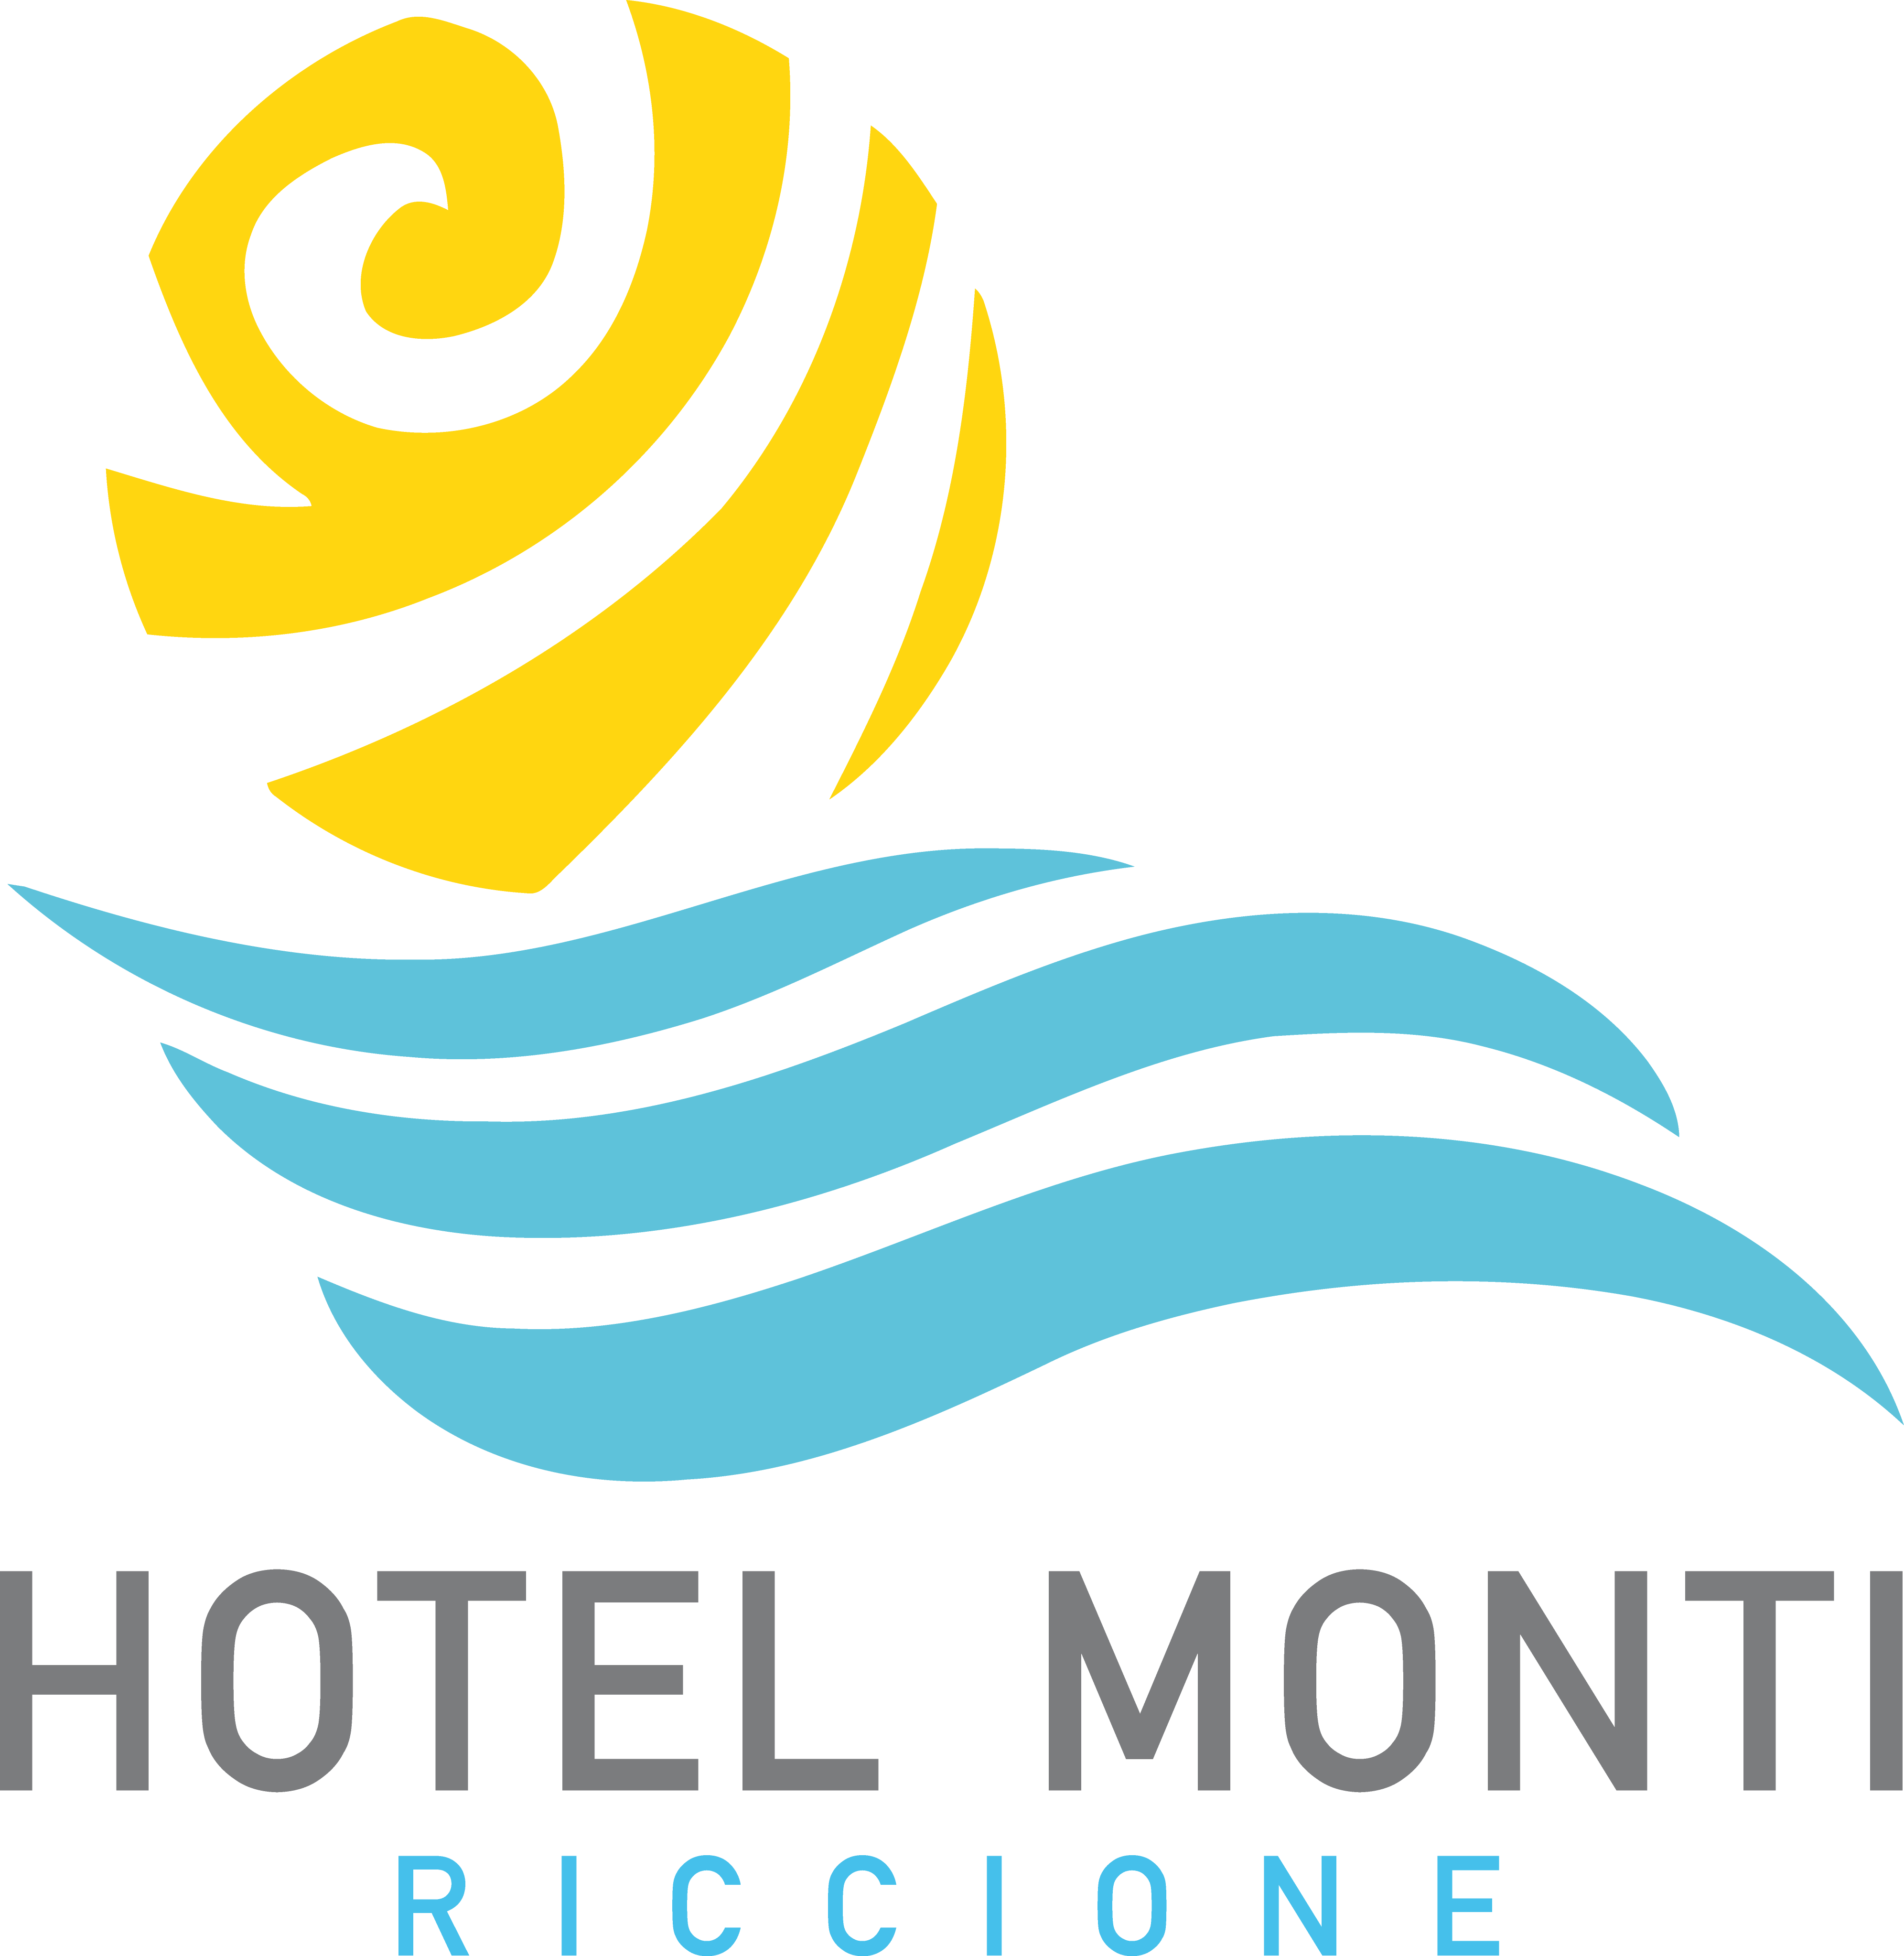 (c) Hotelmonti.com